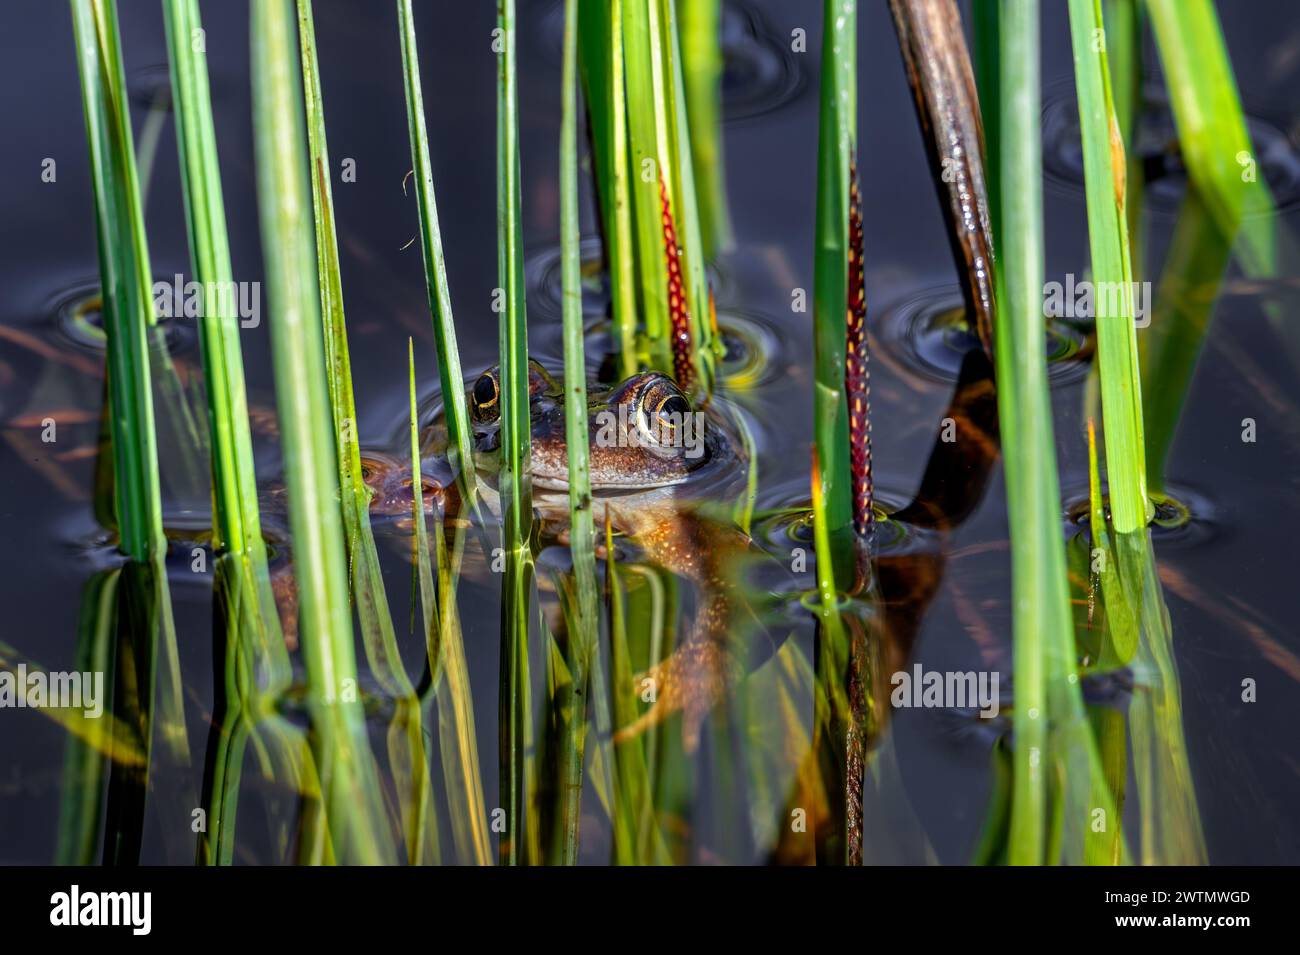 Grenouille commune européenne / grenouille brune / grenouille herbacée (Rana temporaria) flottant parmi la végétation aquatique dans l'étang pendant la saison de reproduction au début du printemps Banque D'Images